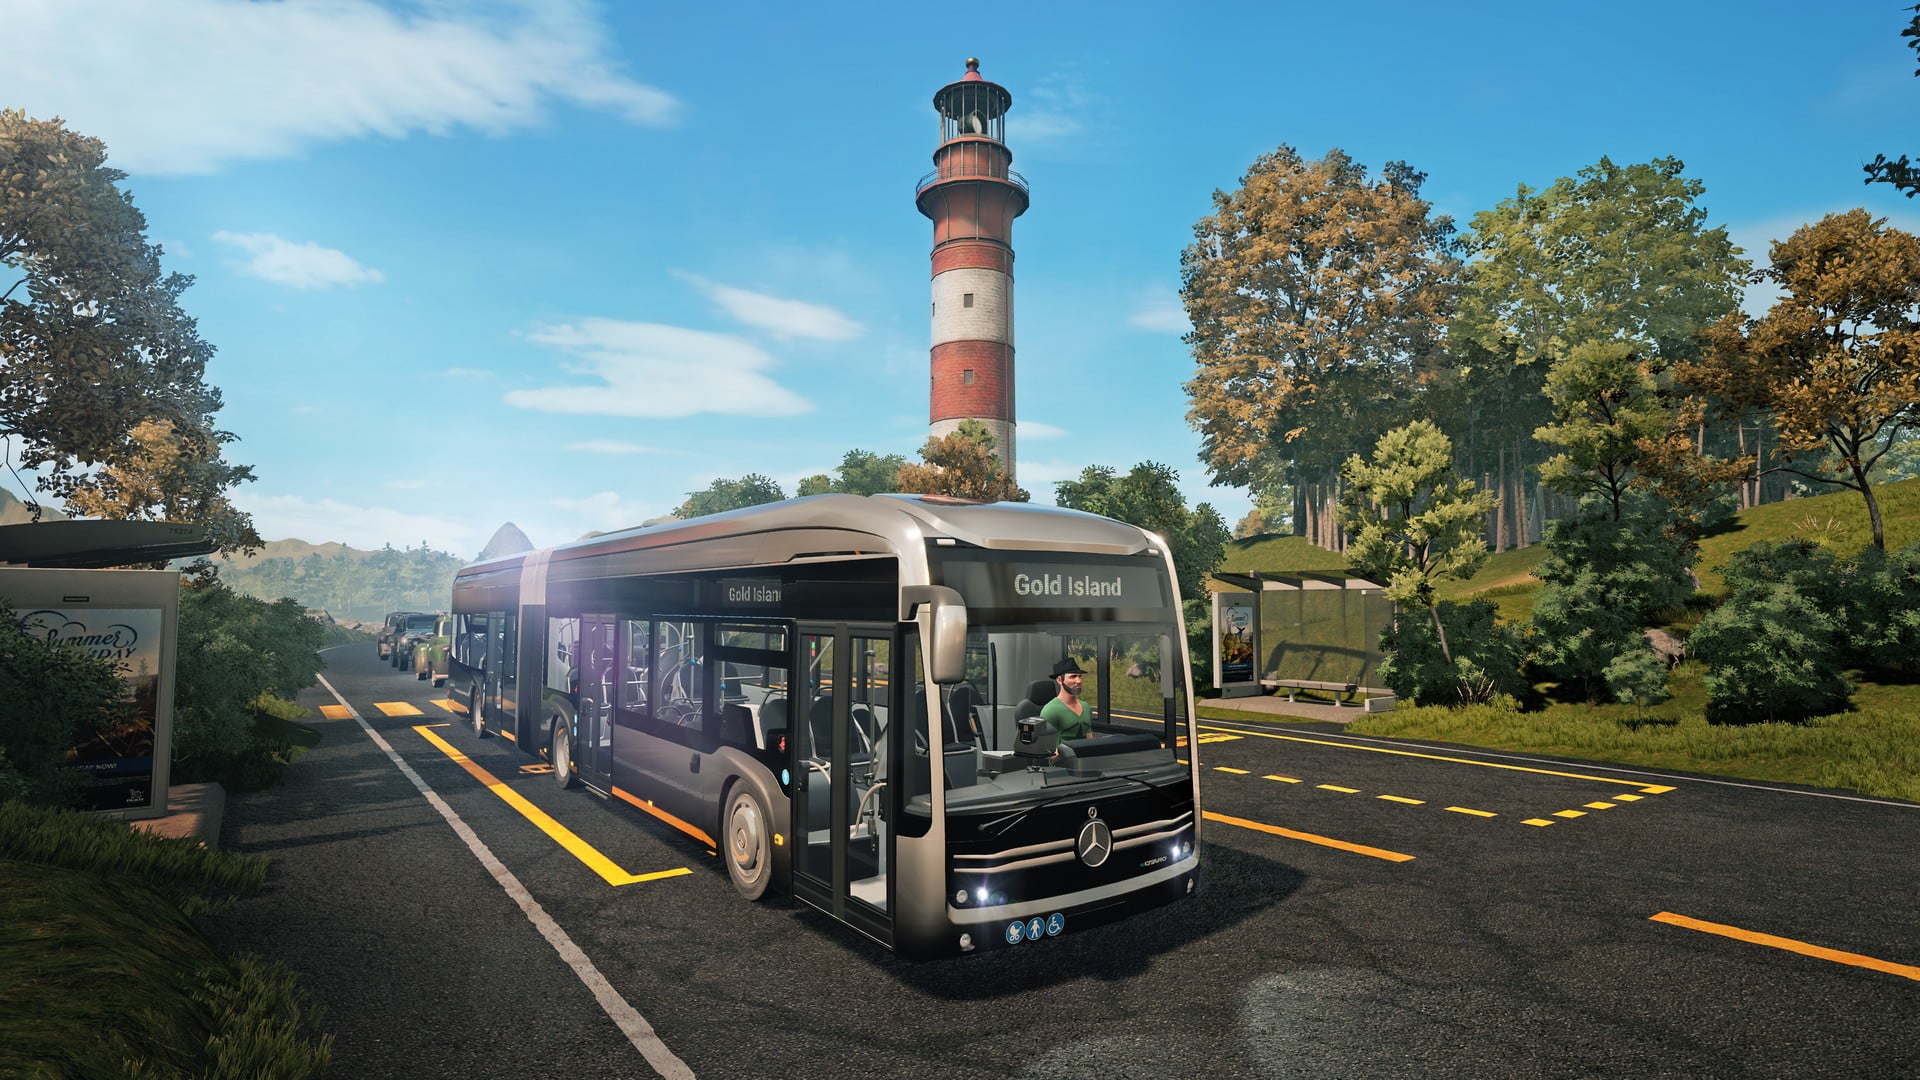 bus simulator 21 download